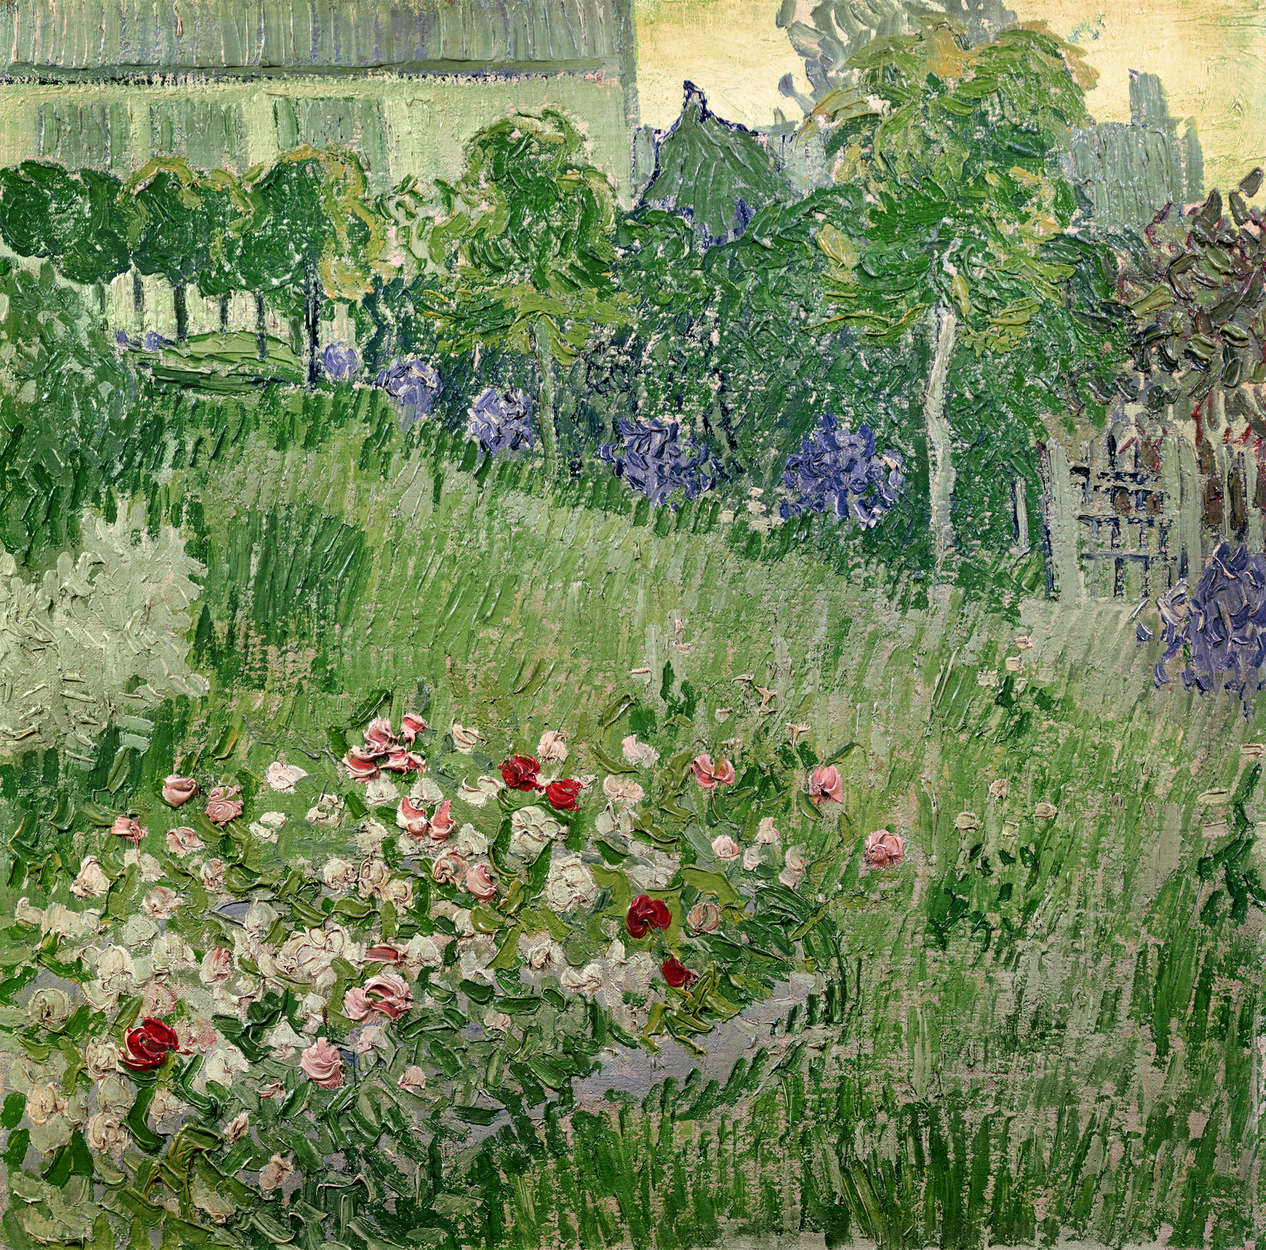             Fototapete "Der Garten von Daubigny" von Vincent van Gogh
        